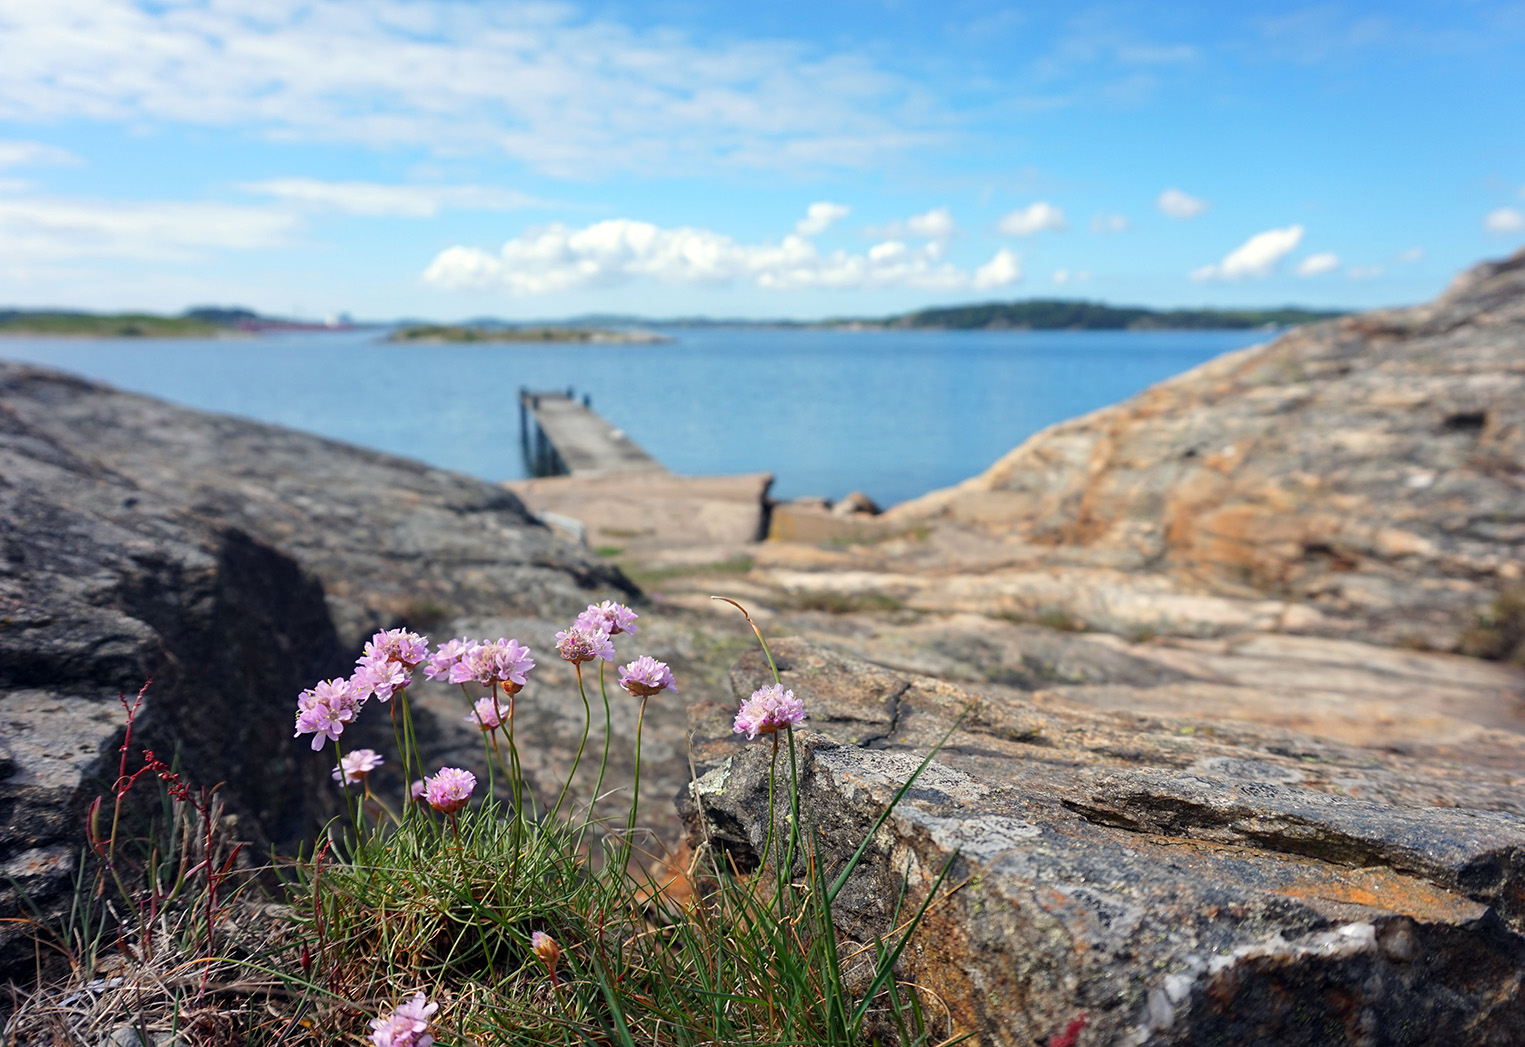 Bild på karga klippor, med en träbrygga som leder ut i havet längre in i bilden, i förgrunden syns lila blommor.